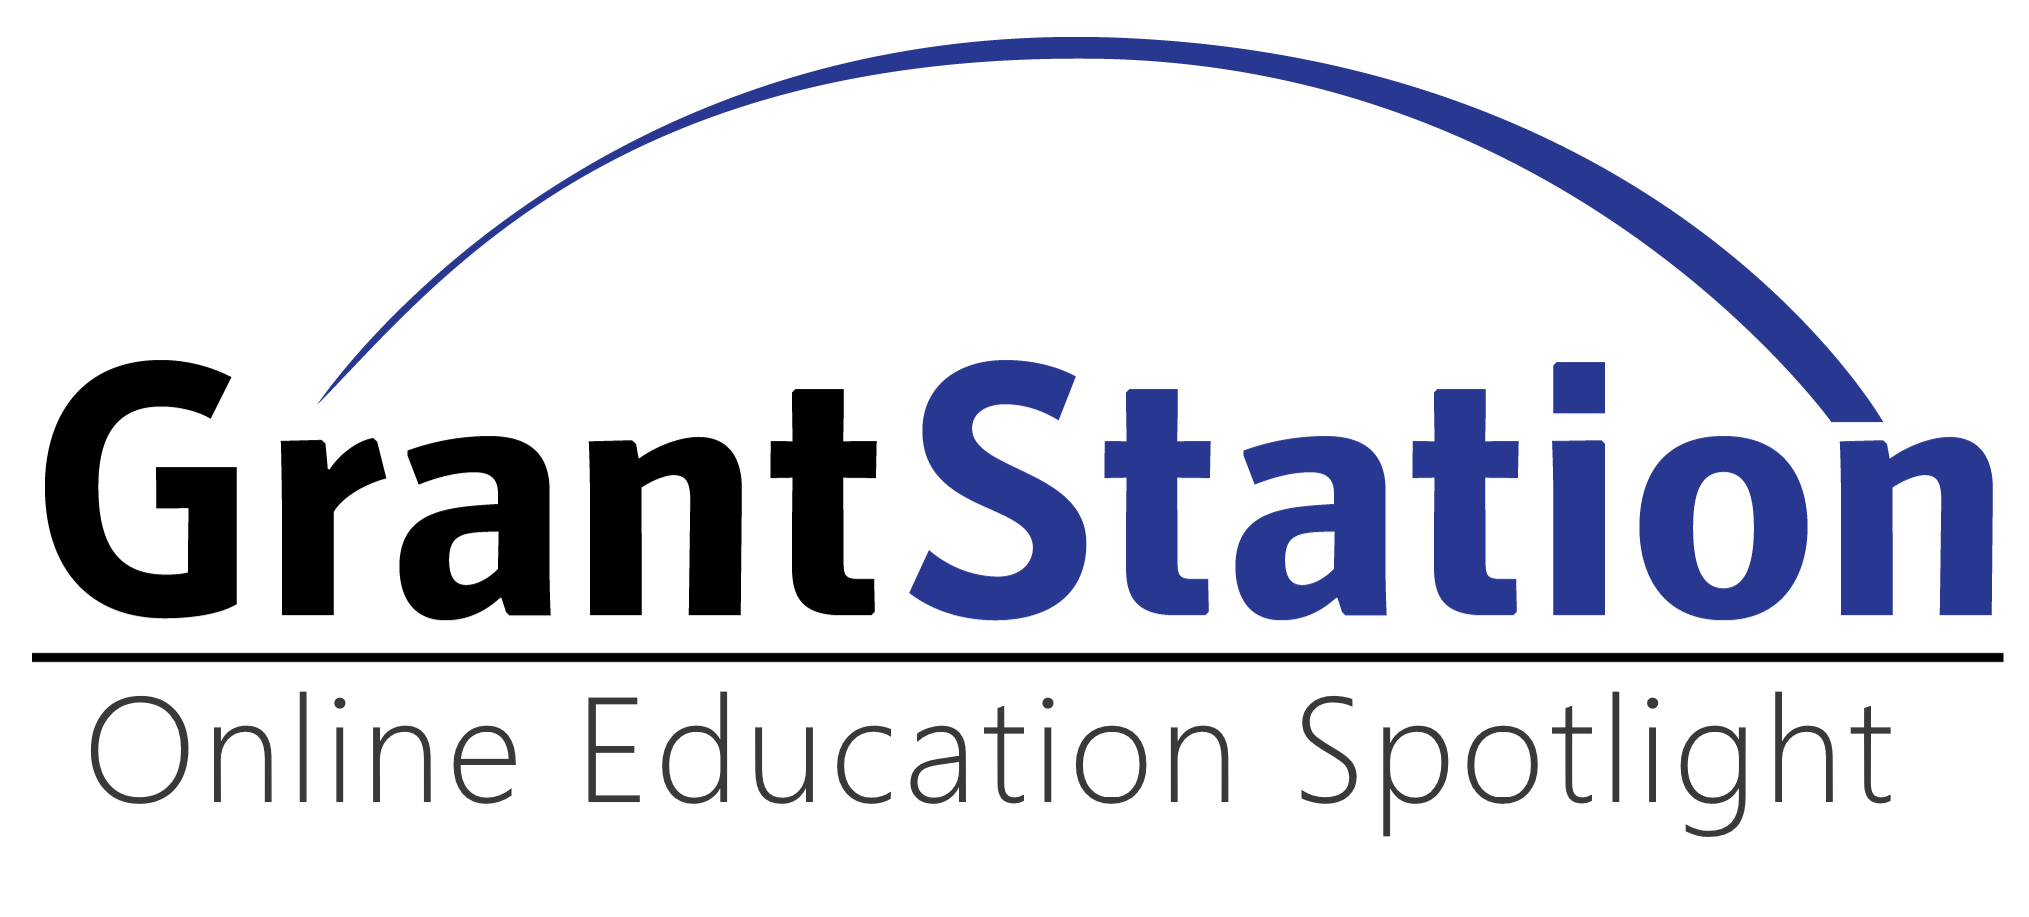 GrantStation Insider Logo